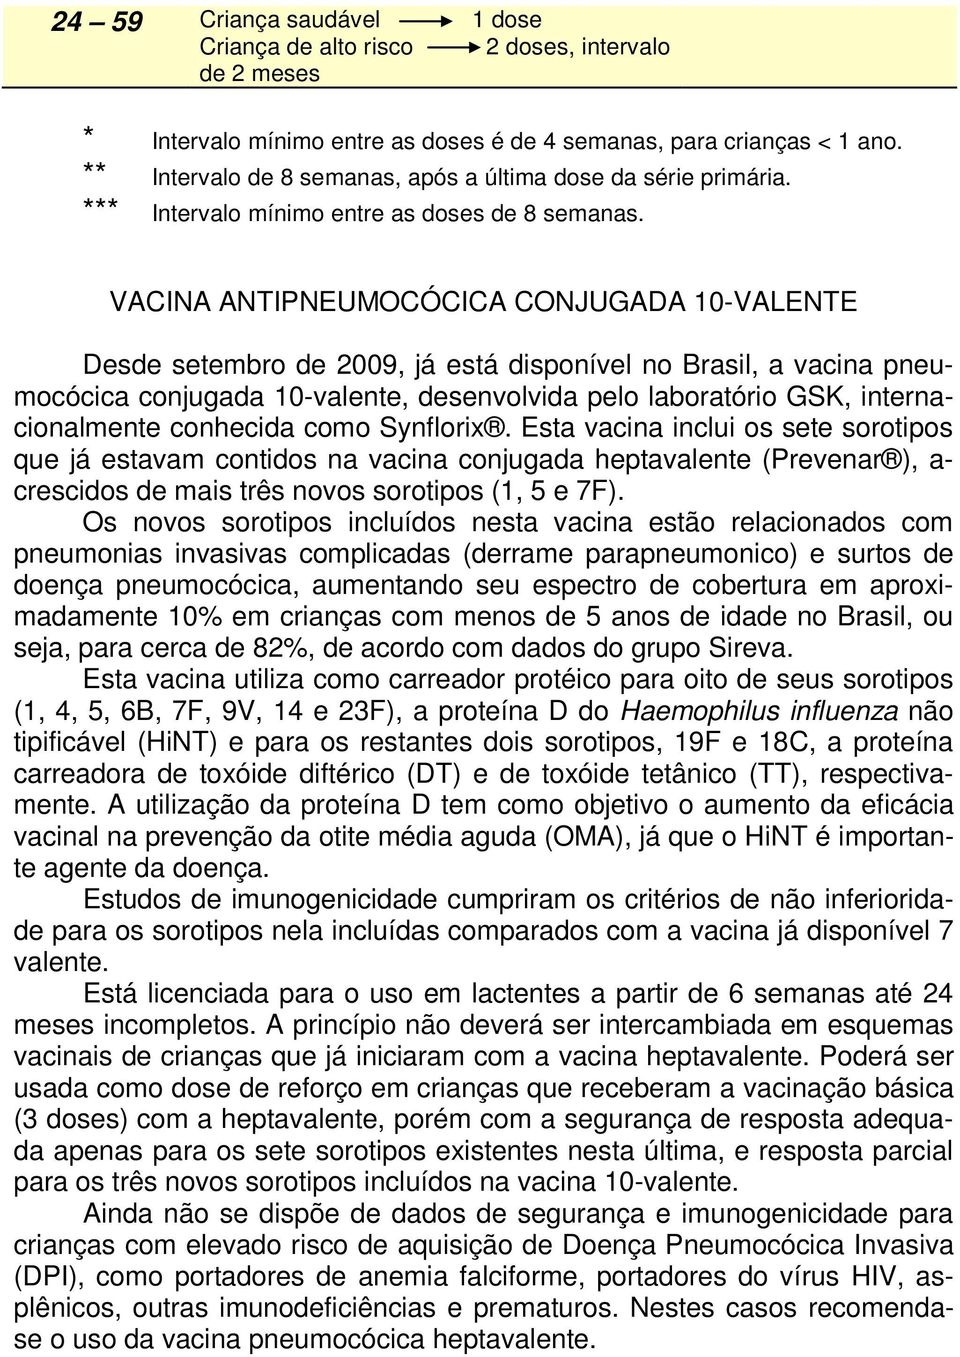 VACINA ANTIPNEUMOCÓCICA CONJUGADA 10-VALENTE Desde setembro de 2009, já está disponível no Brasil, a vacina pneumocócica conjugada 10-valente, desenvolvida pelo laboratório GSK, internacionalmente